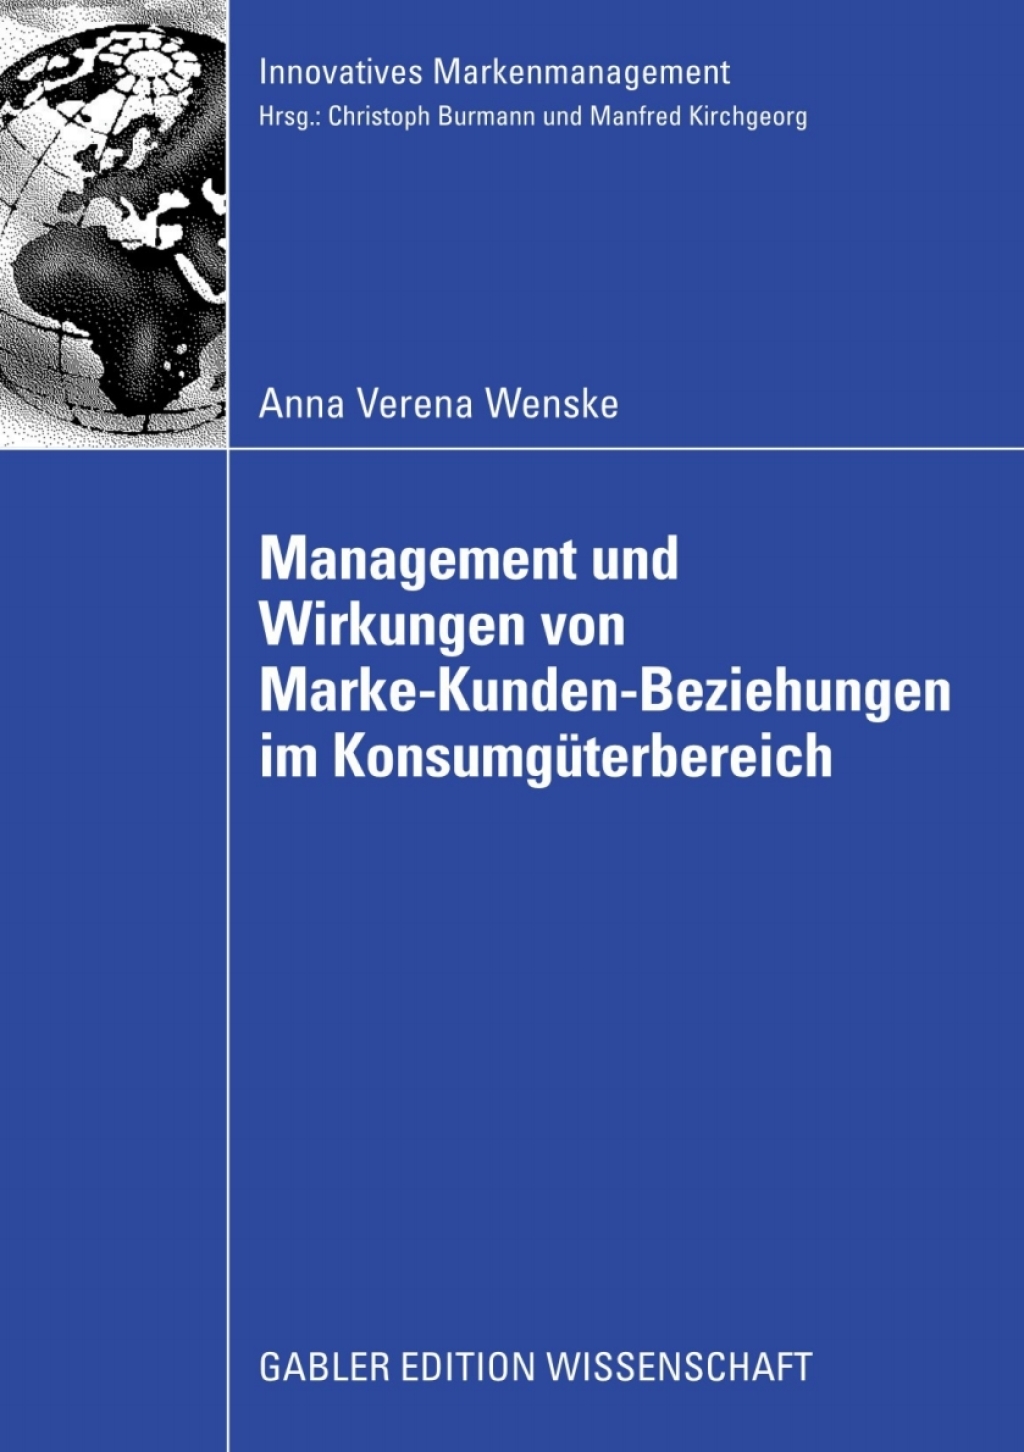 ISBN 9783834911414 product image for Management und Wirkungen von Marke-Kunden-Beziehungen im KonsumgÃ¼terbereich (eB | upcitemdb.com